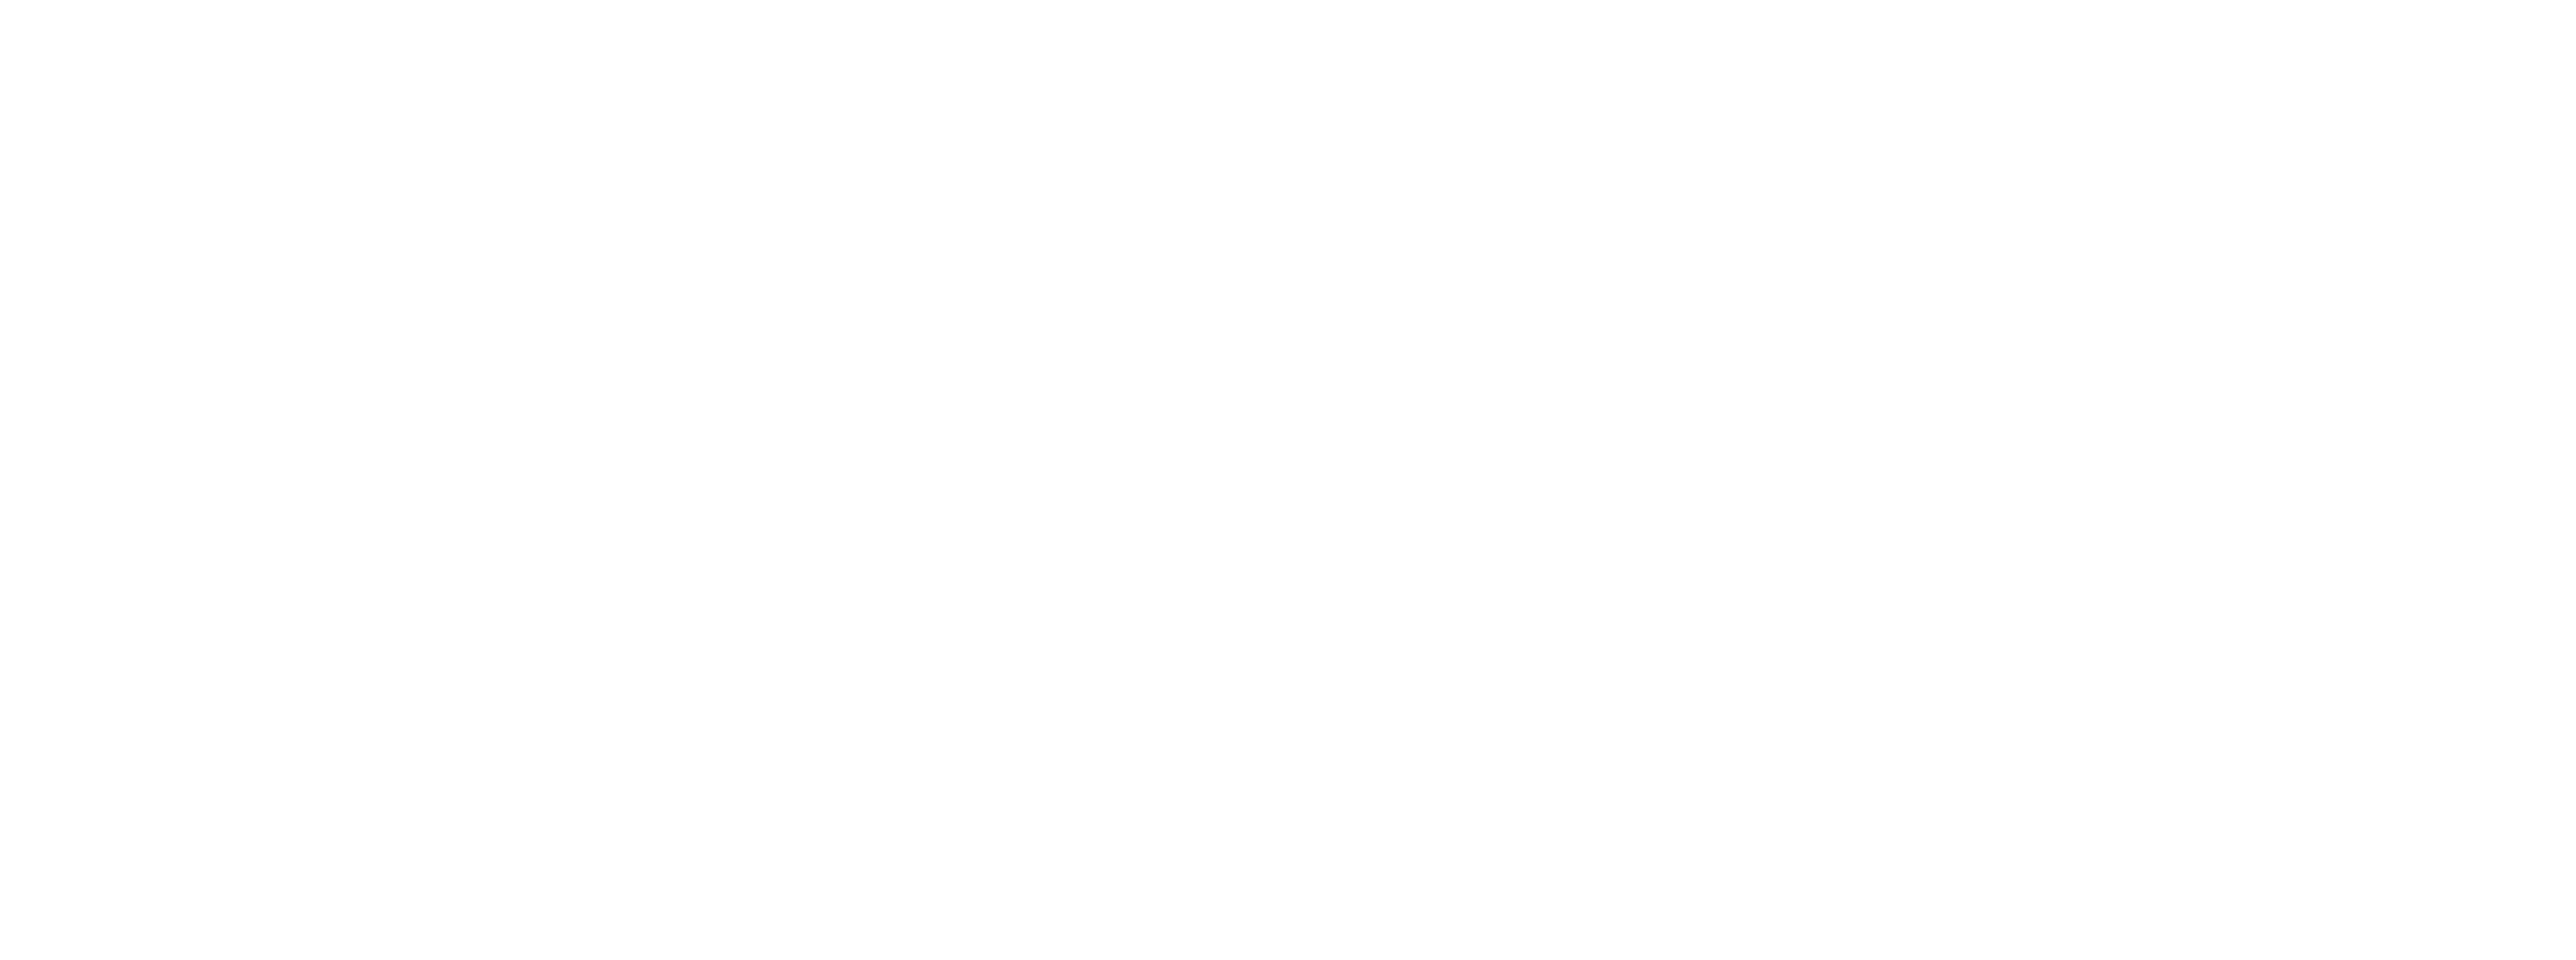 Diego Columbus logo